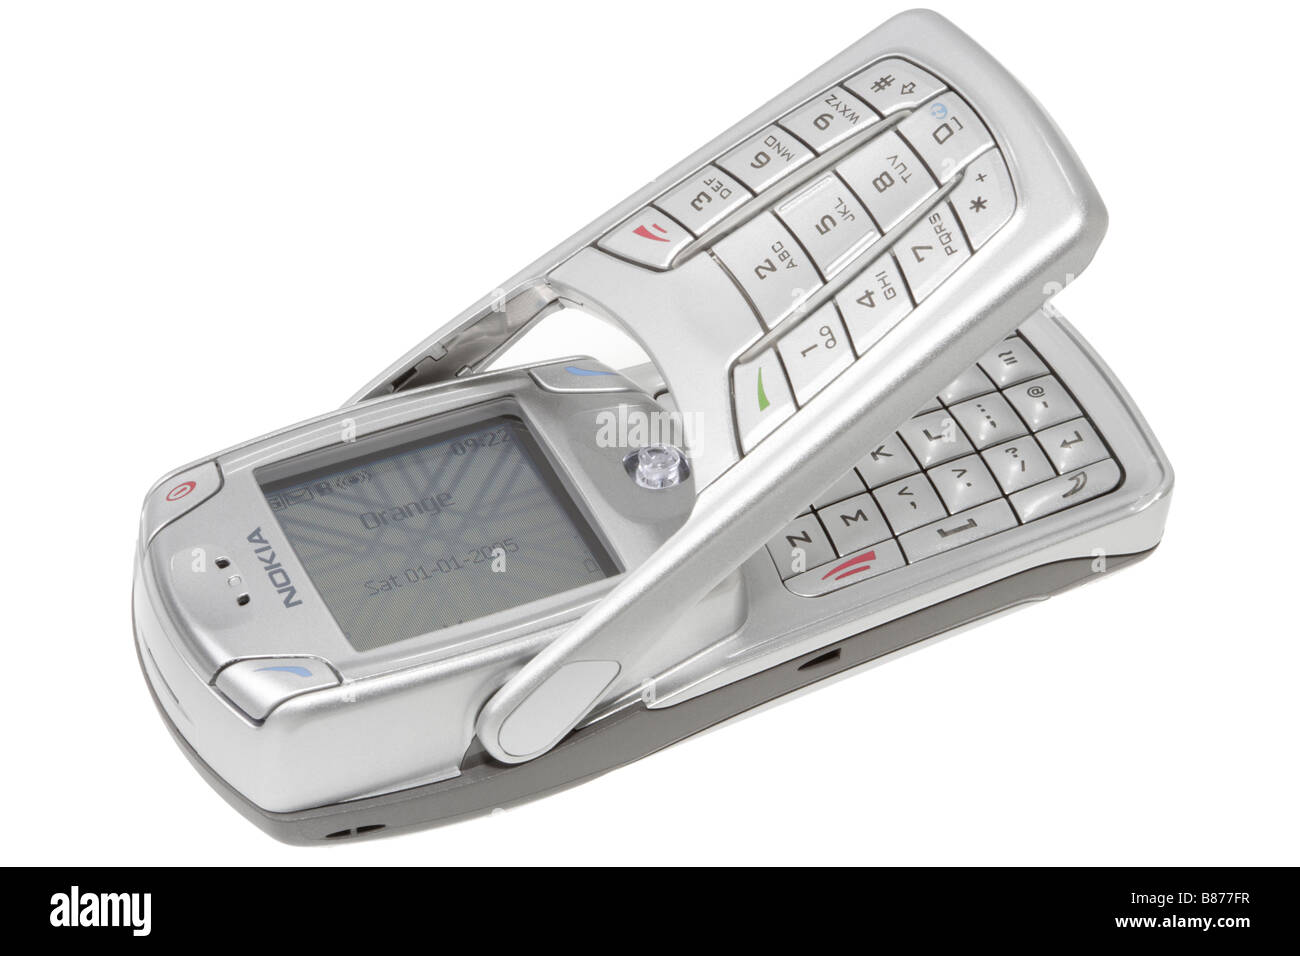 Téléphone mobile Nokia cellphone et clavier Photo Stock - Alamy